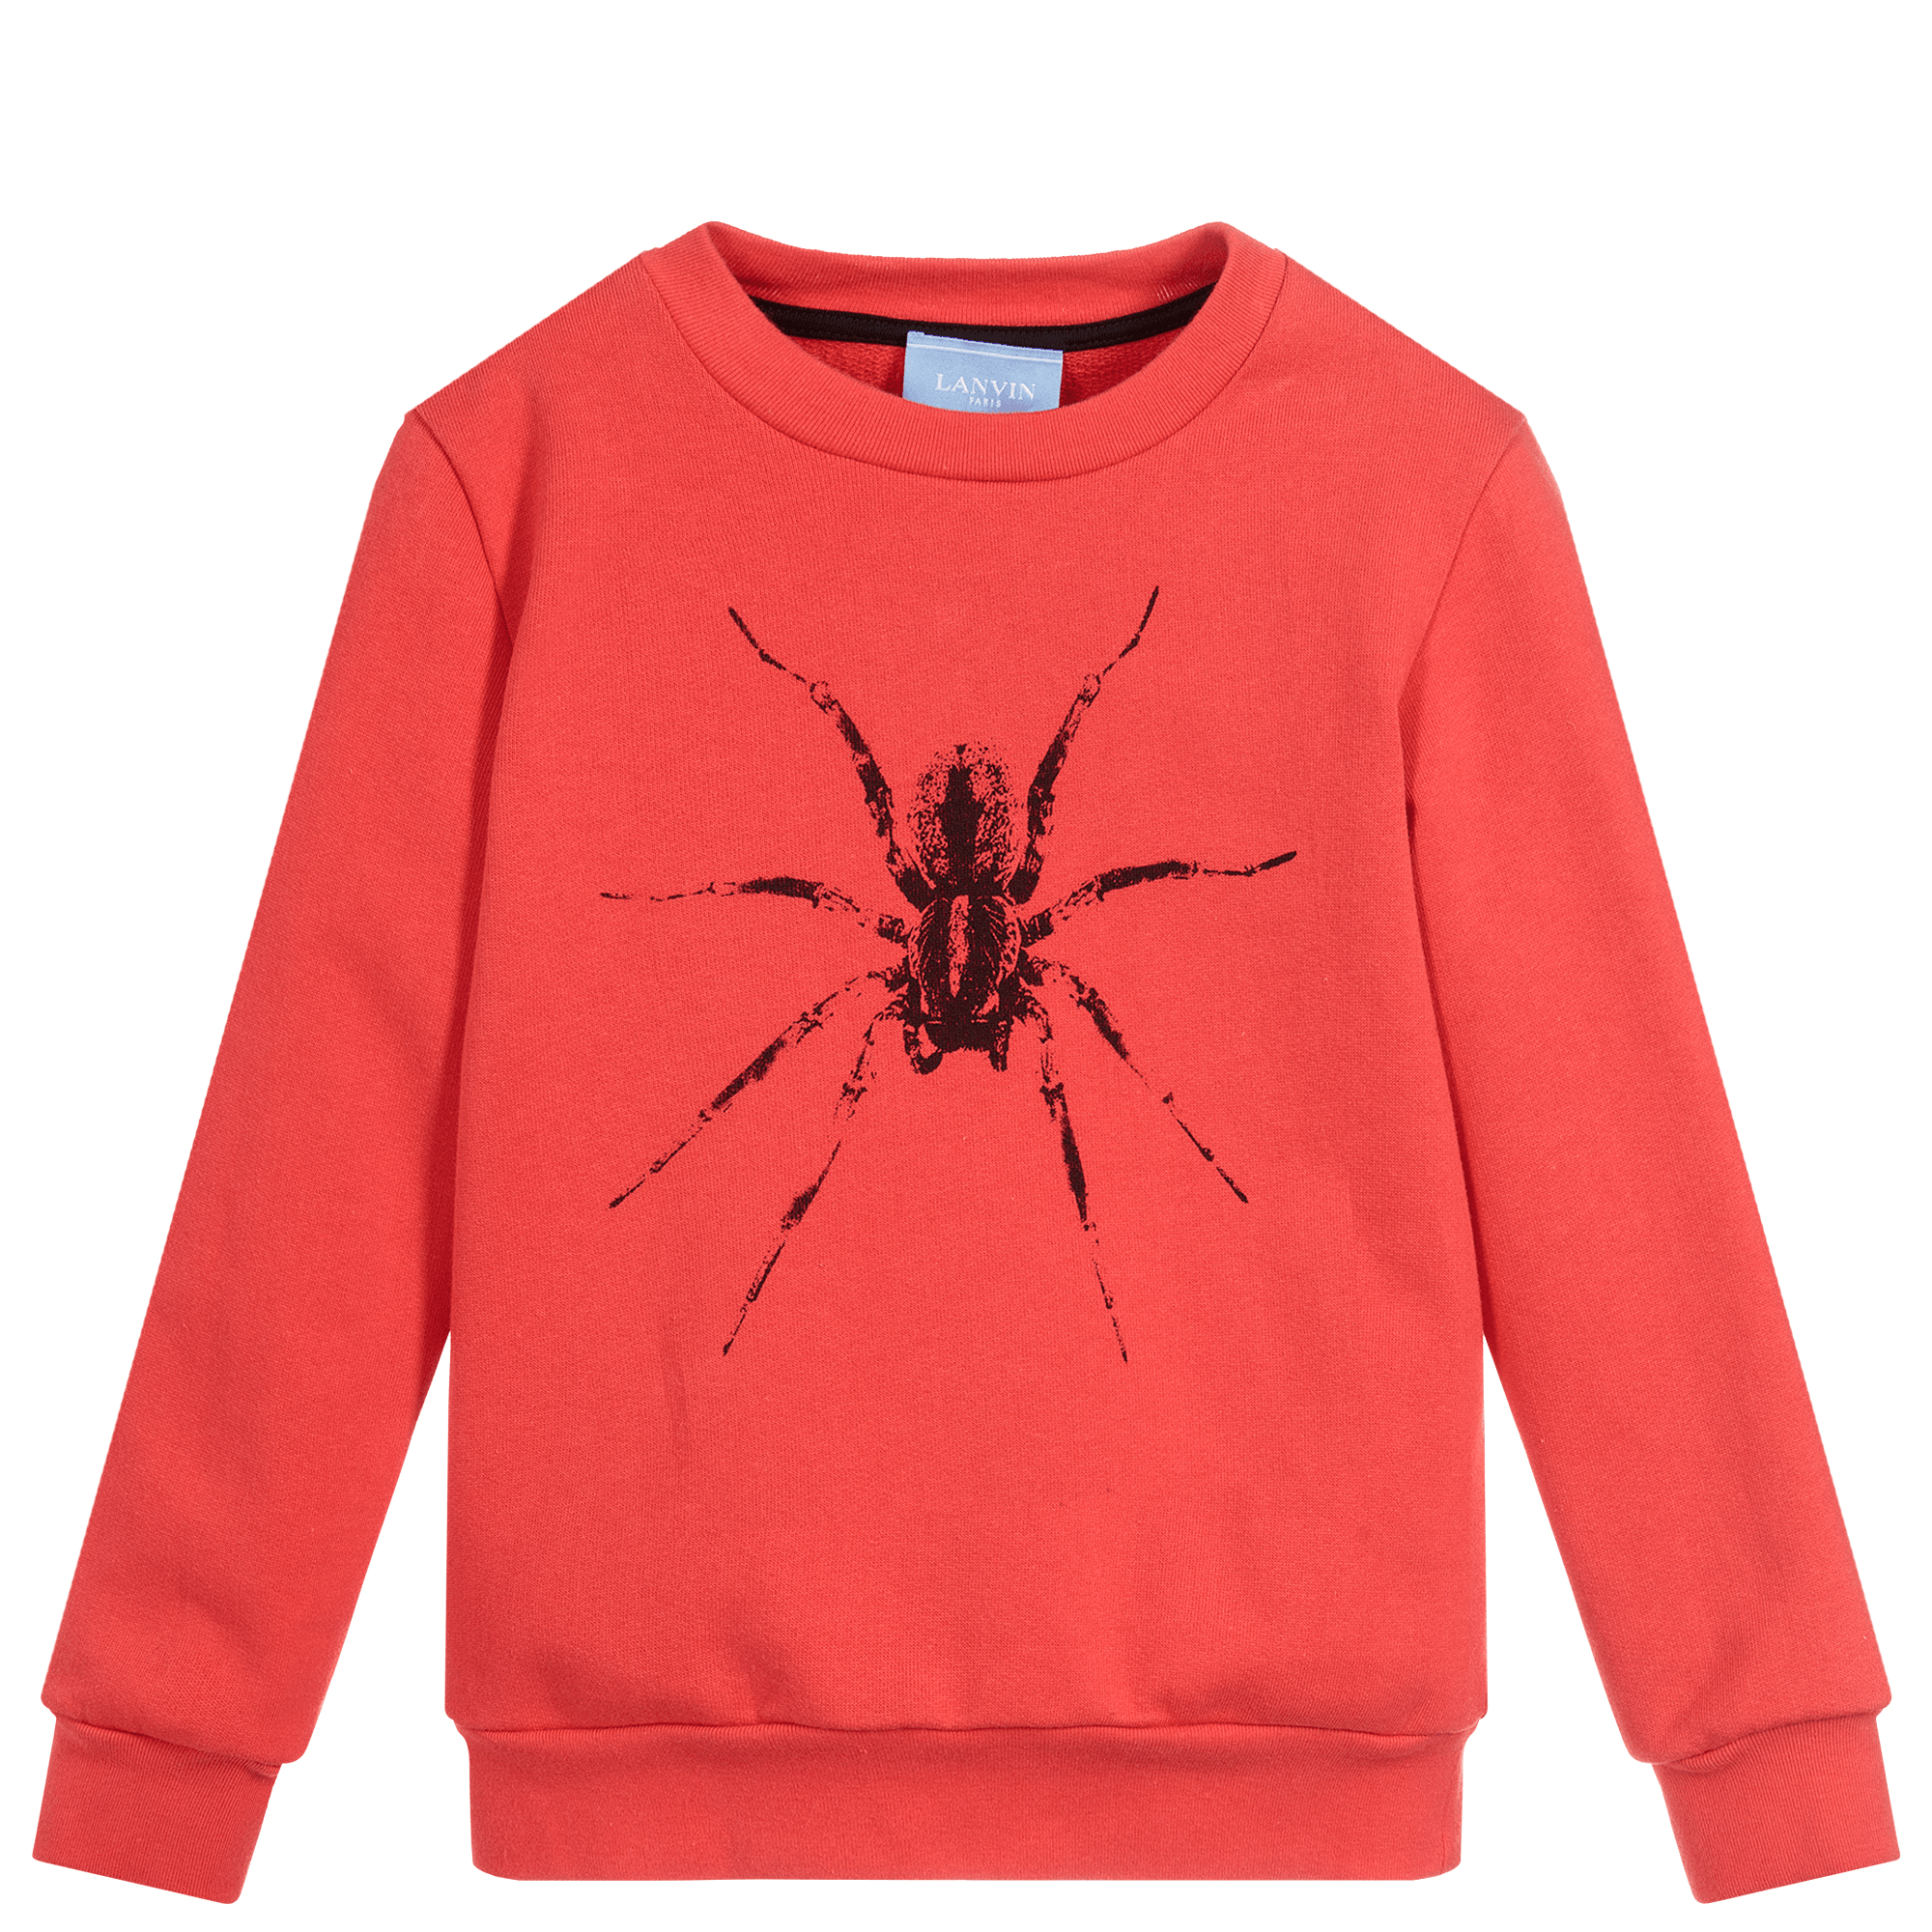 Lanvin Paris Boys Spider Sweatshirt Red